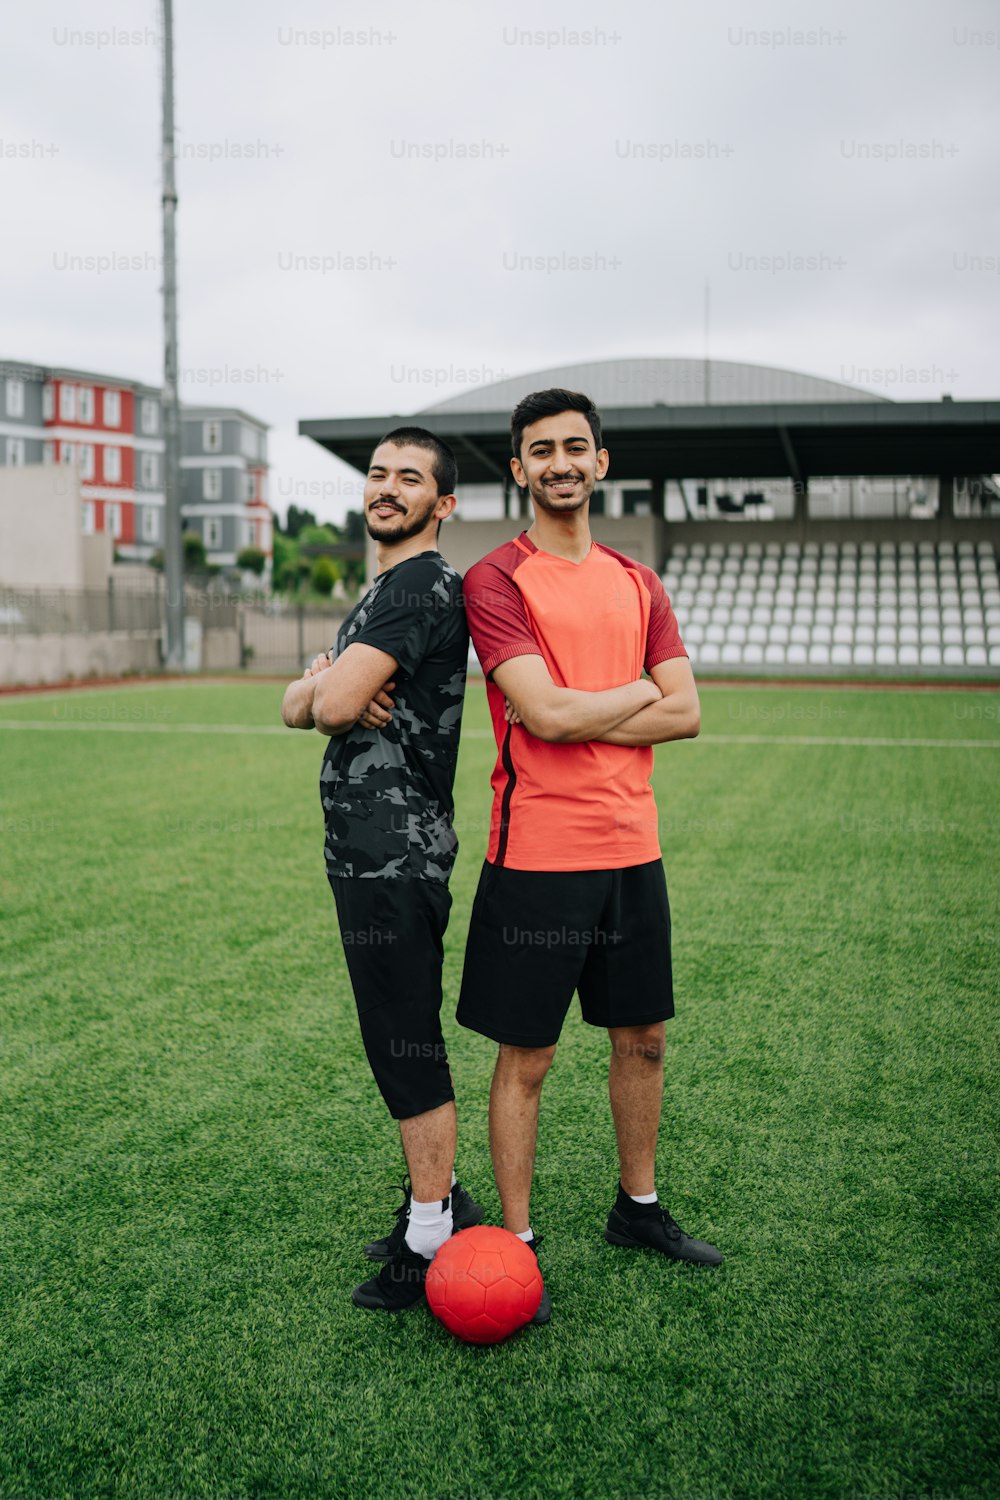 zwei männer, die nebeneinander auf einem fußballfeld stehen